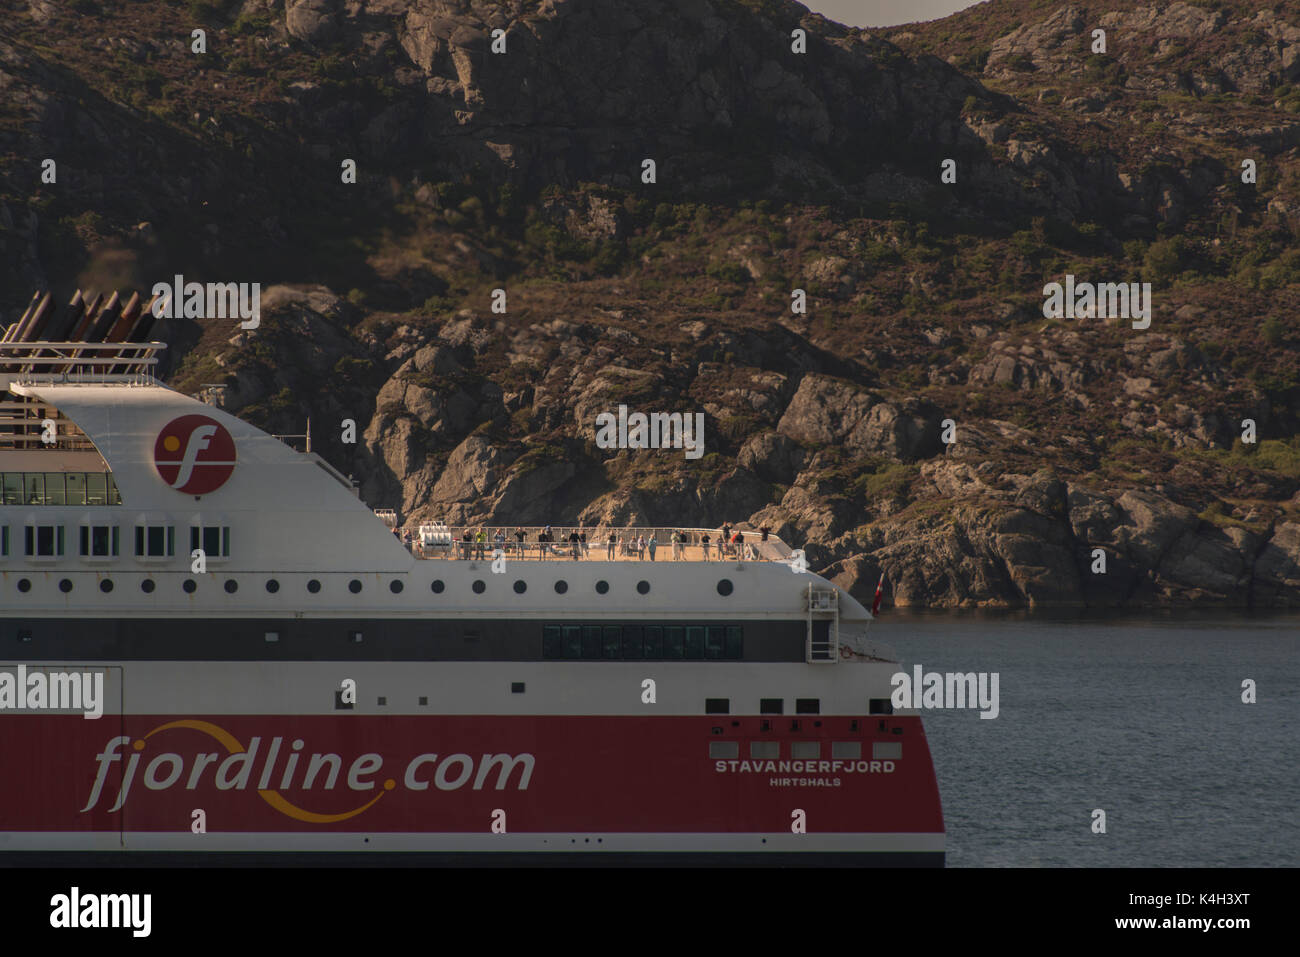 Eine Fjordline.com Fjordline Passagier Kreuzfahrtschiff Segeln nach Stavanger Norwegen. Credit LEE RAMSDEN/ALAMY Stockfoto